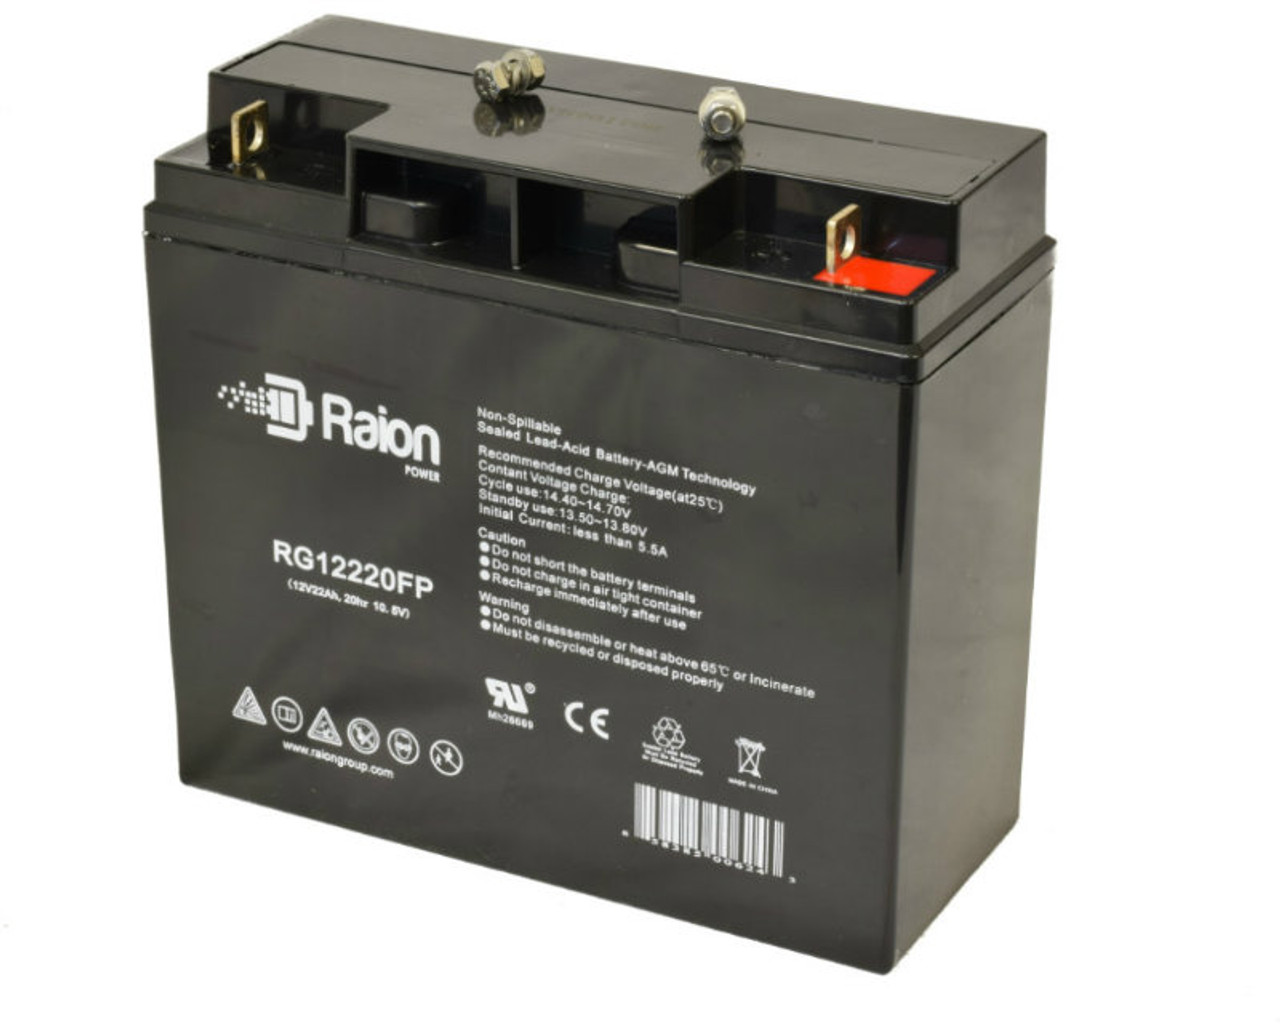 Raion Power RG12220FP 12V 22Ah Lead Acid Battery for AWC X